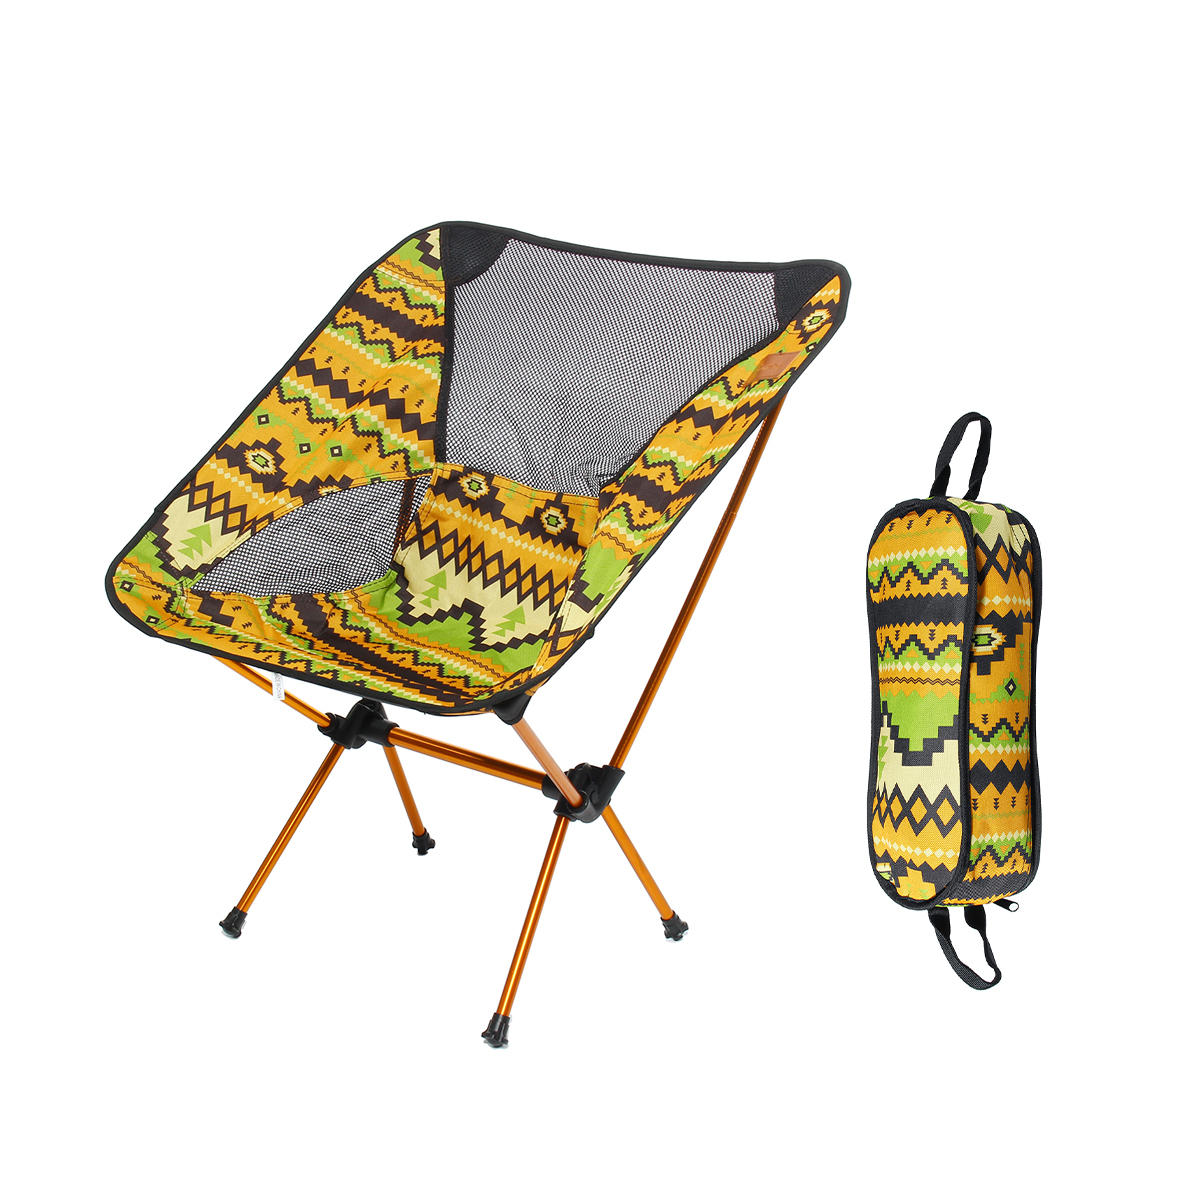 Раскладной стул из алюминиевого сплава для пикника и кемпинга, максимальная нагрузка 150 кг.